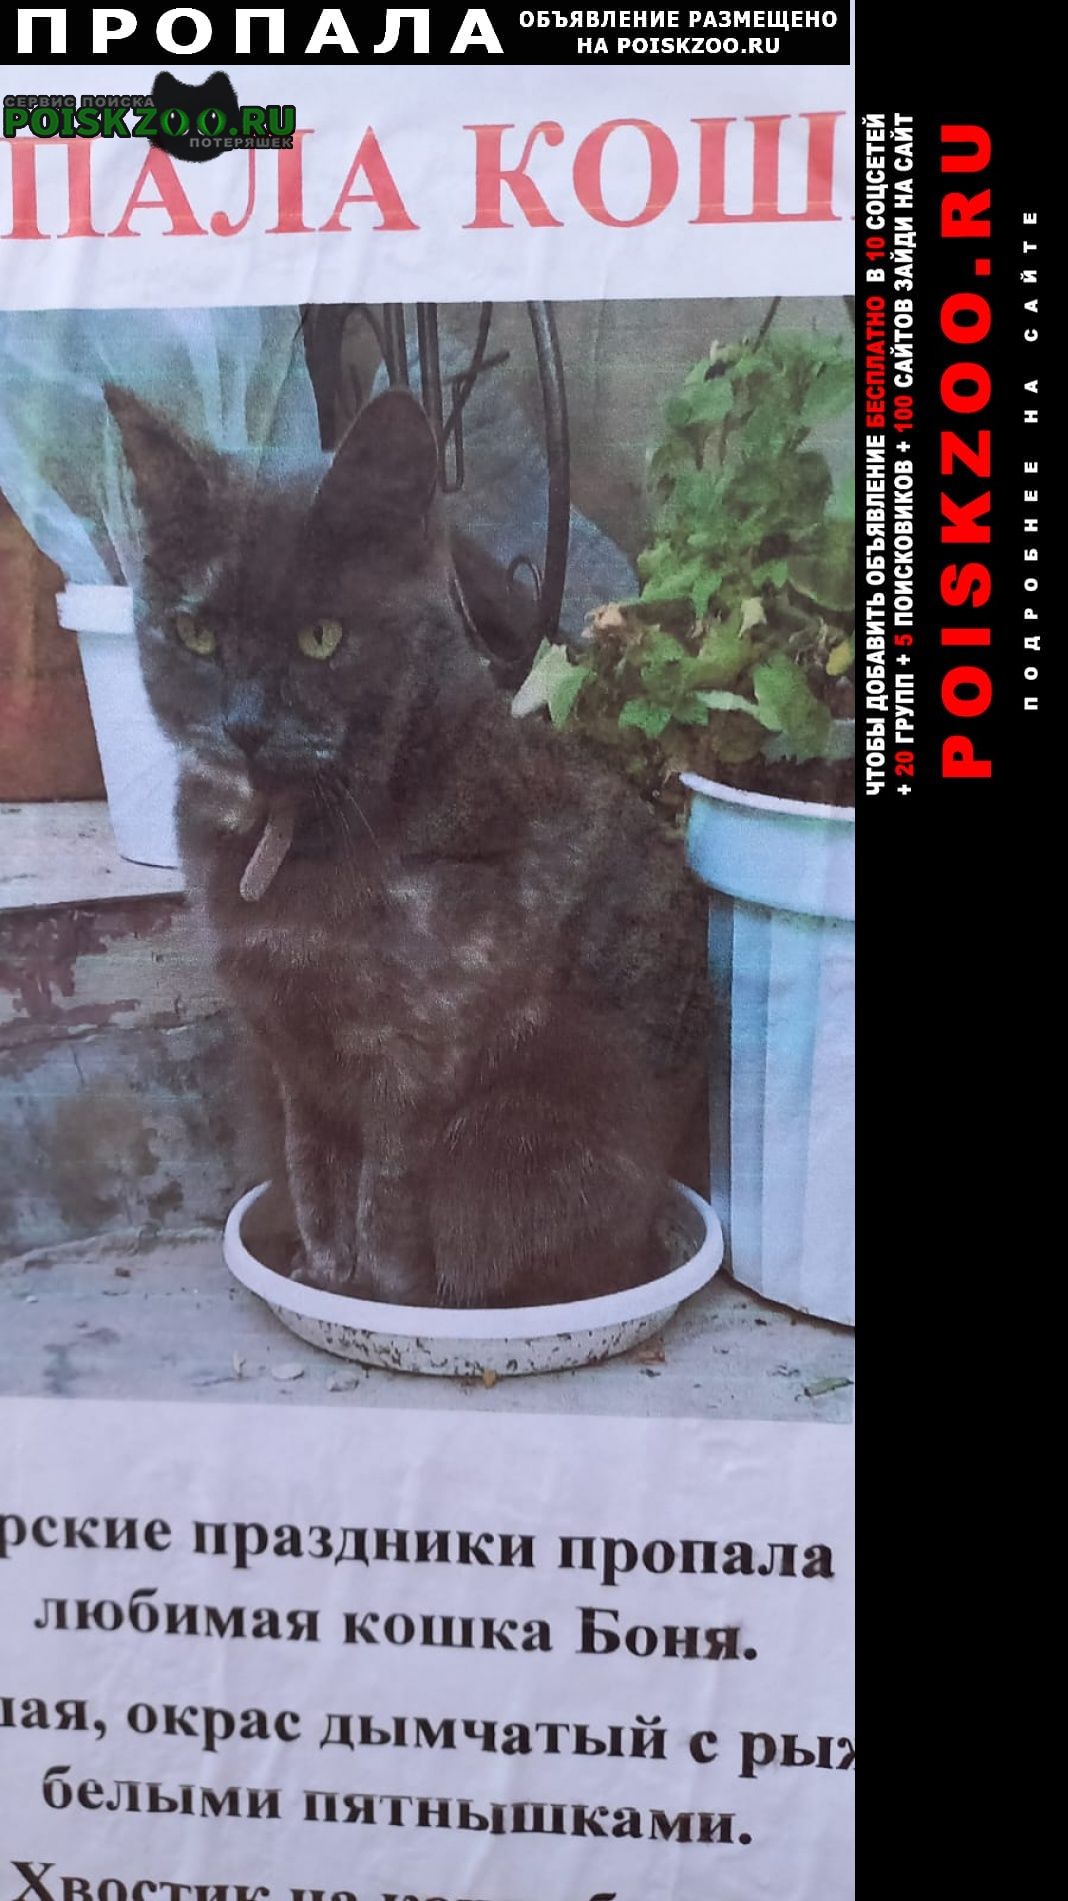 Крымск Пропала кошка боня в районе 7-8 января.